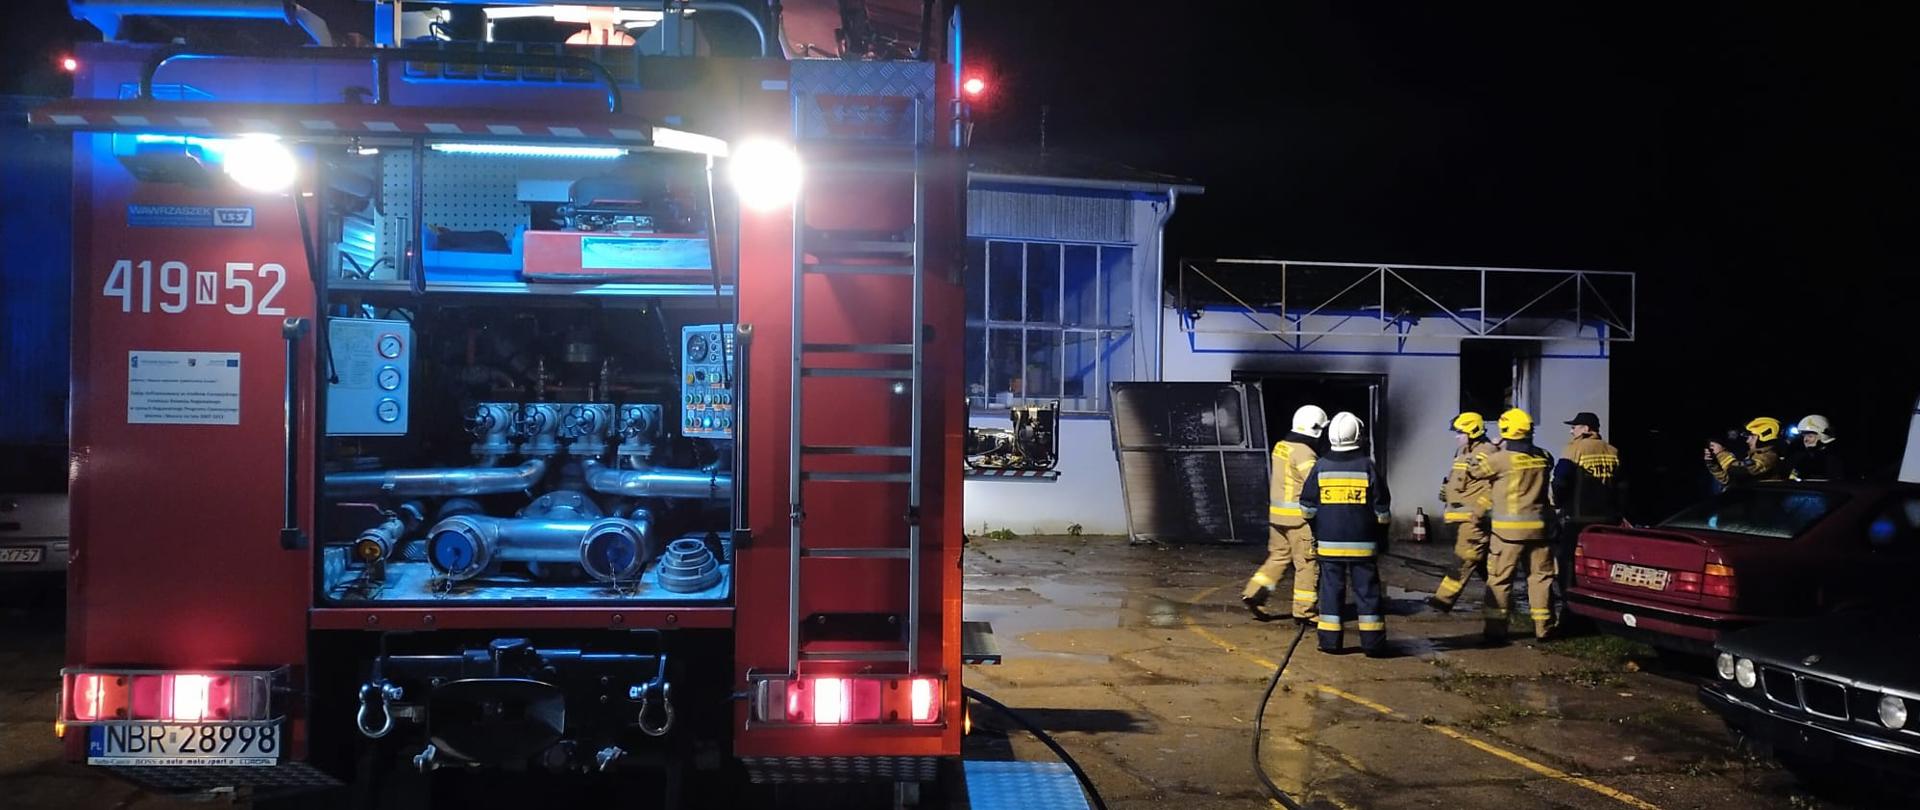 Zdjęcie zrobione nocą. Z lewej strony oświetlony tył pojazdu strażackiego, otwarta skrytka samochodu. Z prawej strony strażacy i samochody osobowe. W oddali biały budynek po pożarze.